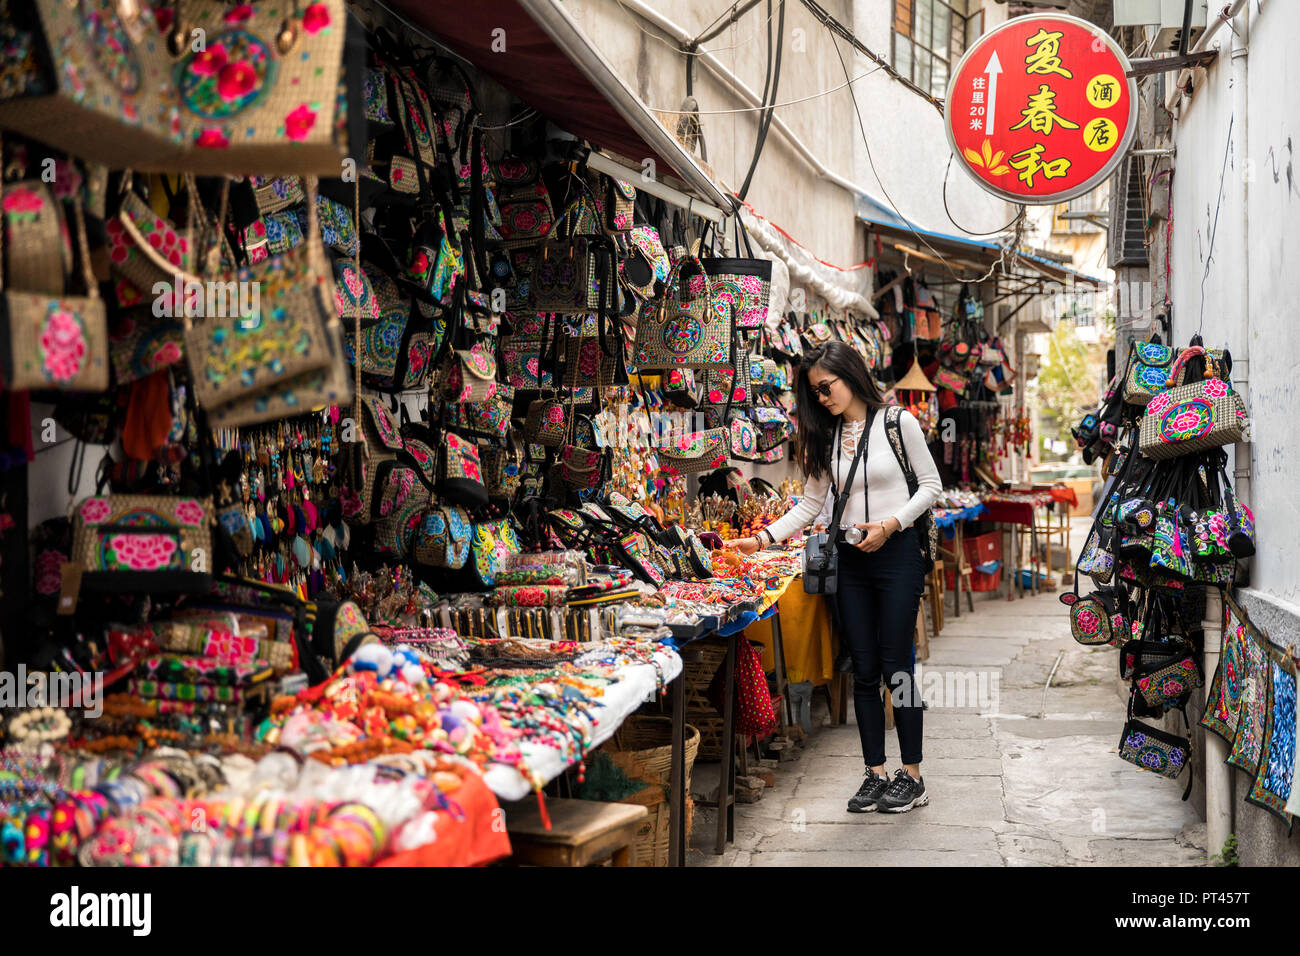 Jeune chinoise à la recherche de souvenirs, de la vieille ville de Dali, Yunnan, Chine Banque D'Images